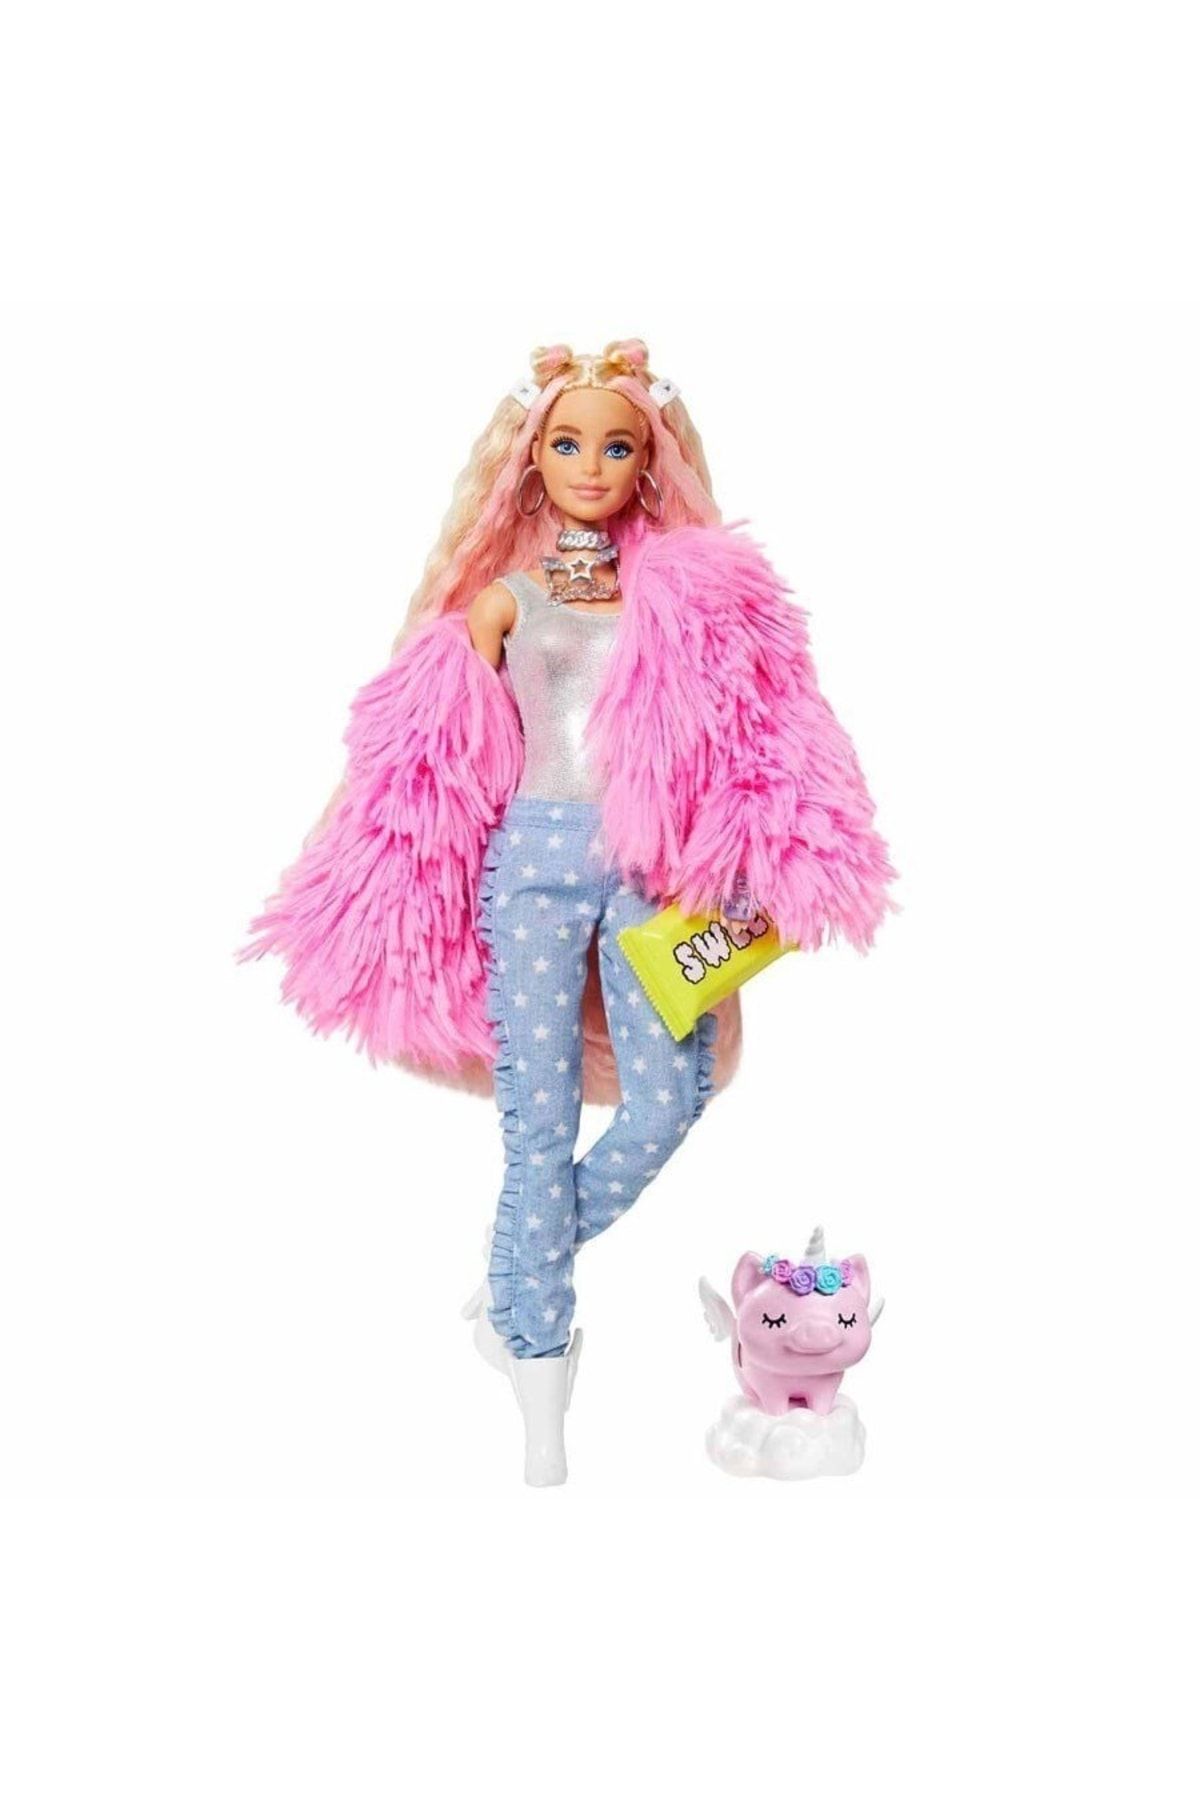 Barbie Extra - Pembe Peluş Ceketli Unicorn Oyuncaklı Bebek 3-9 Yaş Arası Kızlar Için Ideal Bir Hediy